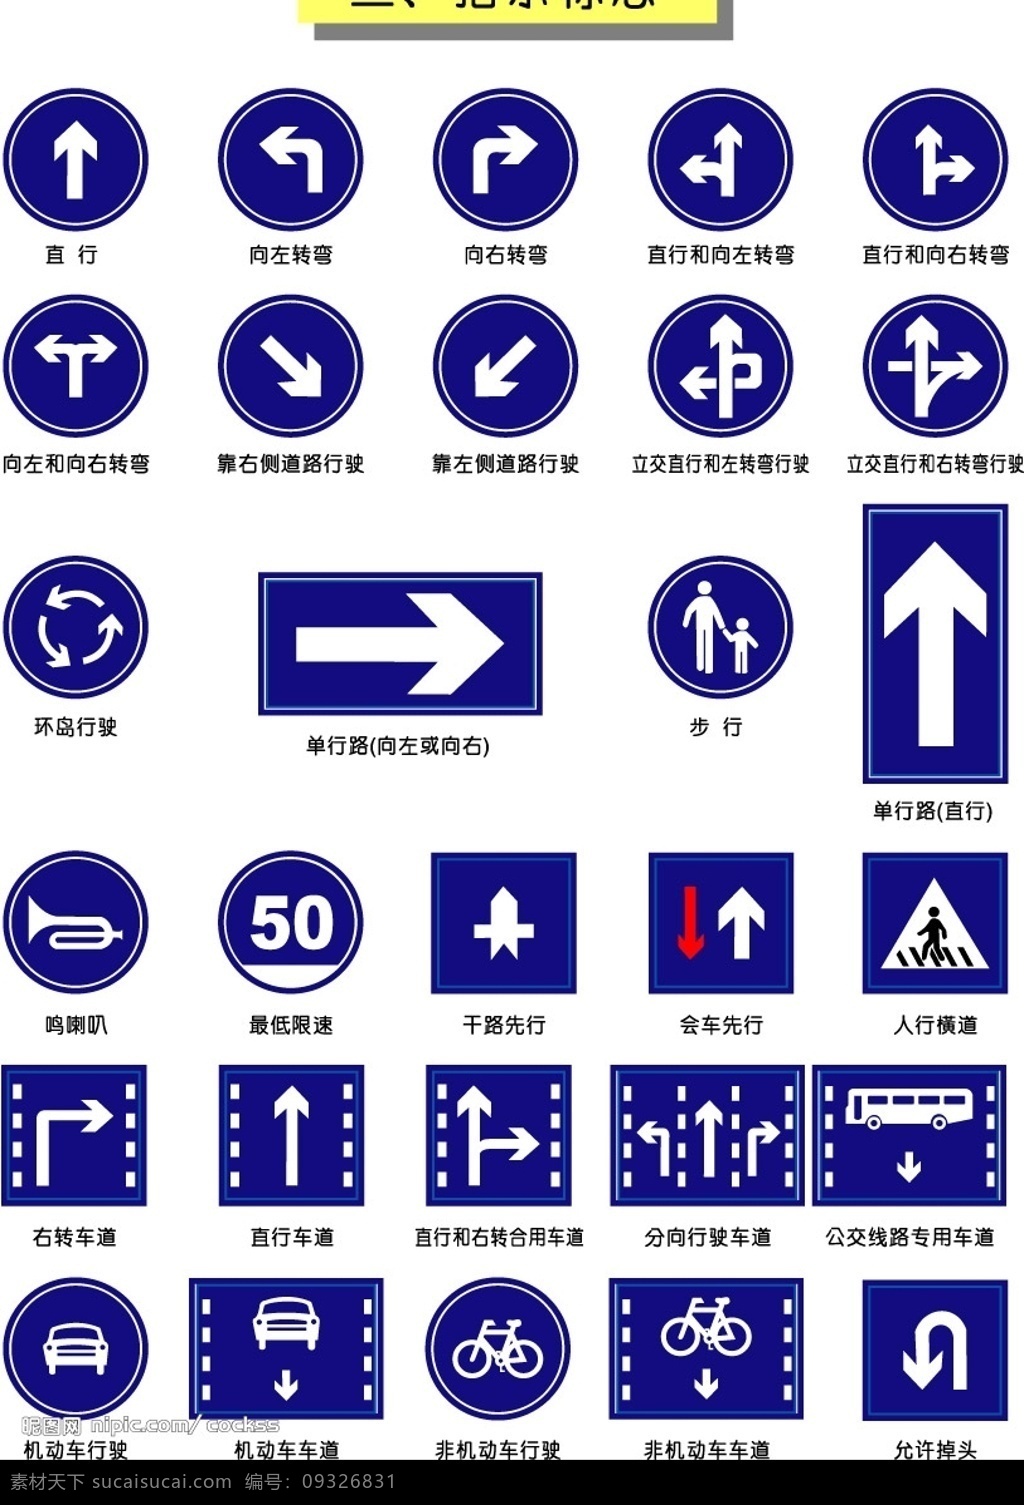 交通 矢量 图标 指示 标志 交通矢量图标 指示标志 标识标志图标 公共标识标志 交通符号 矢量图库